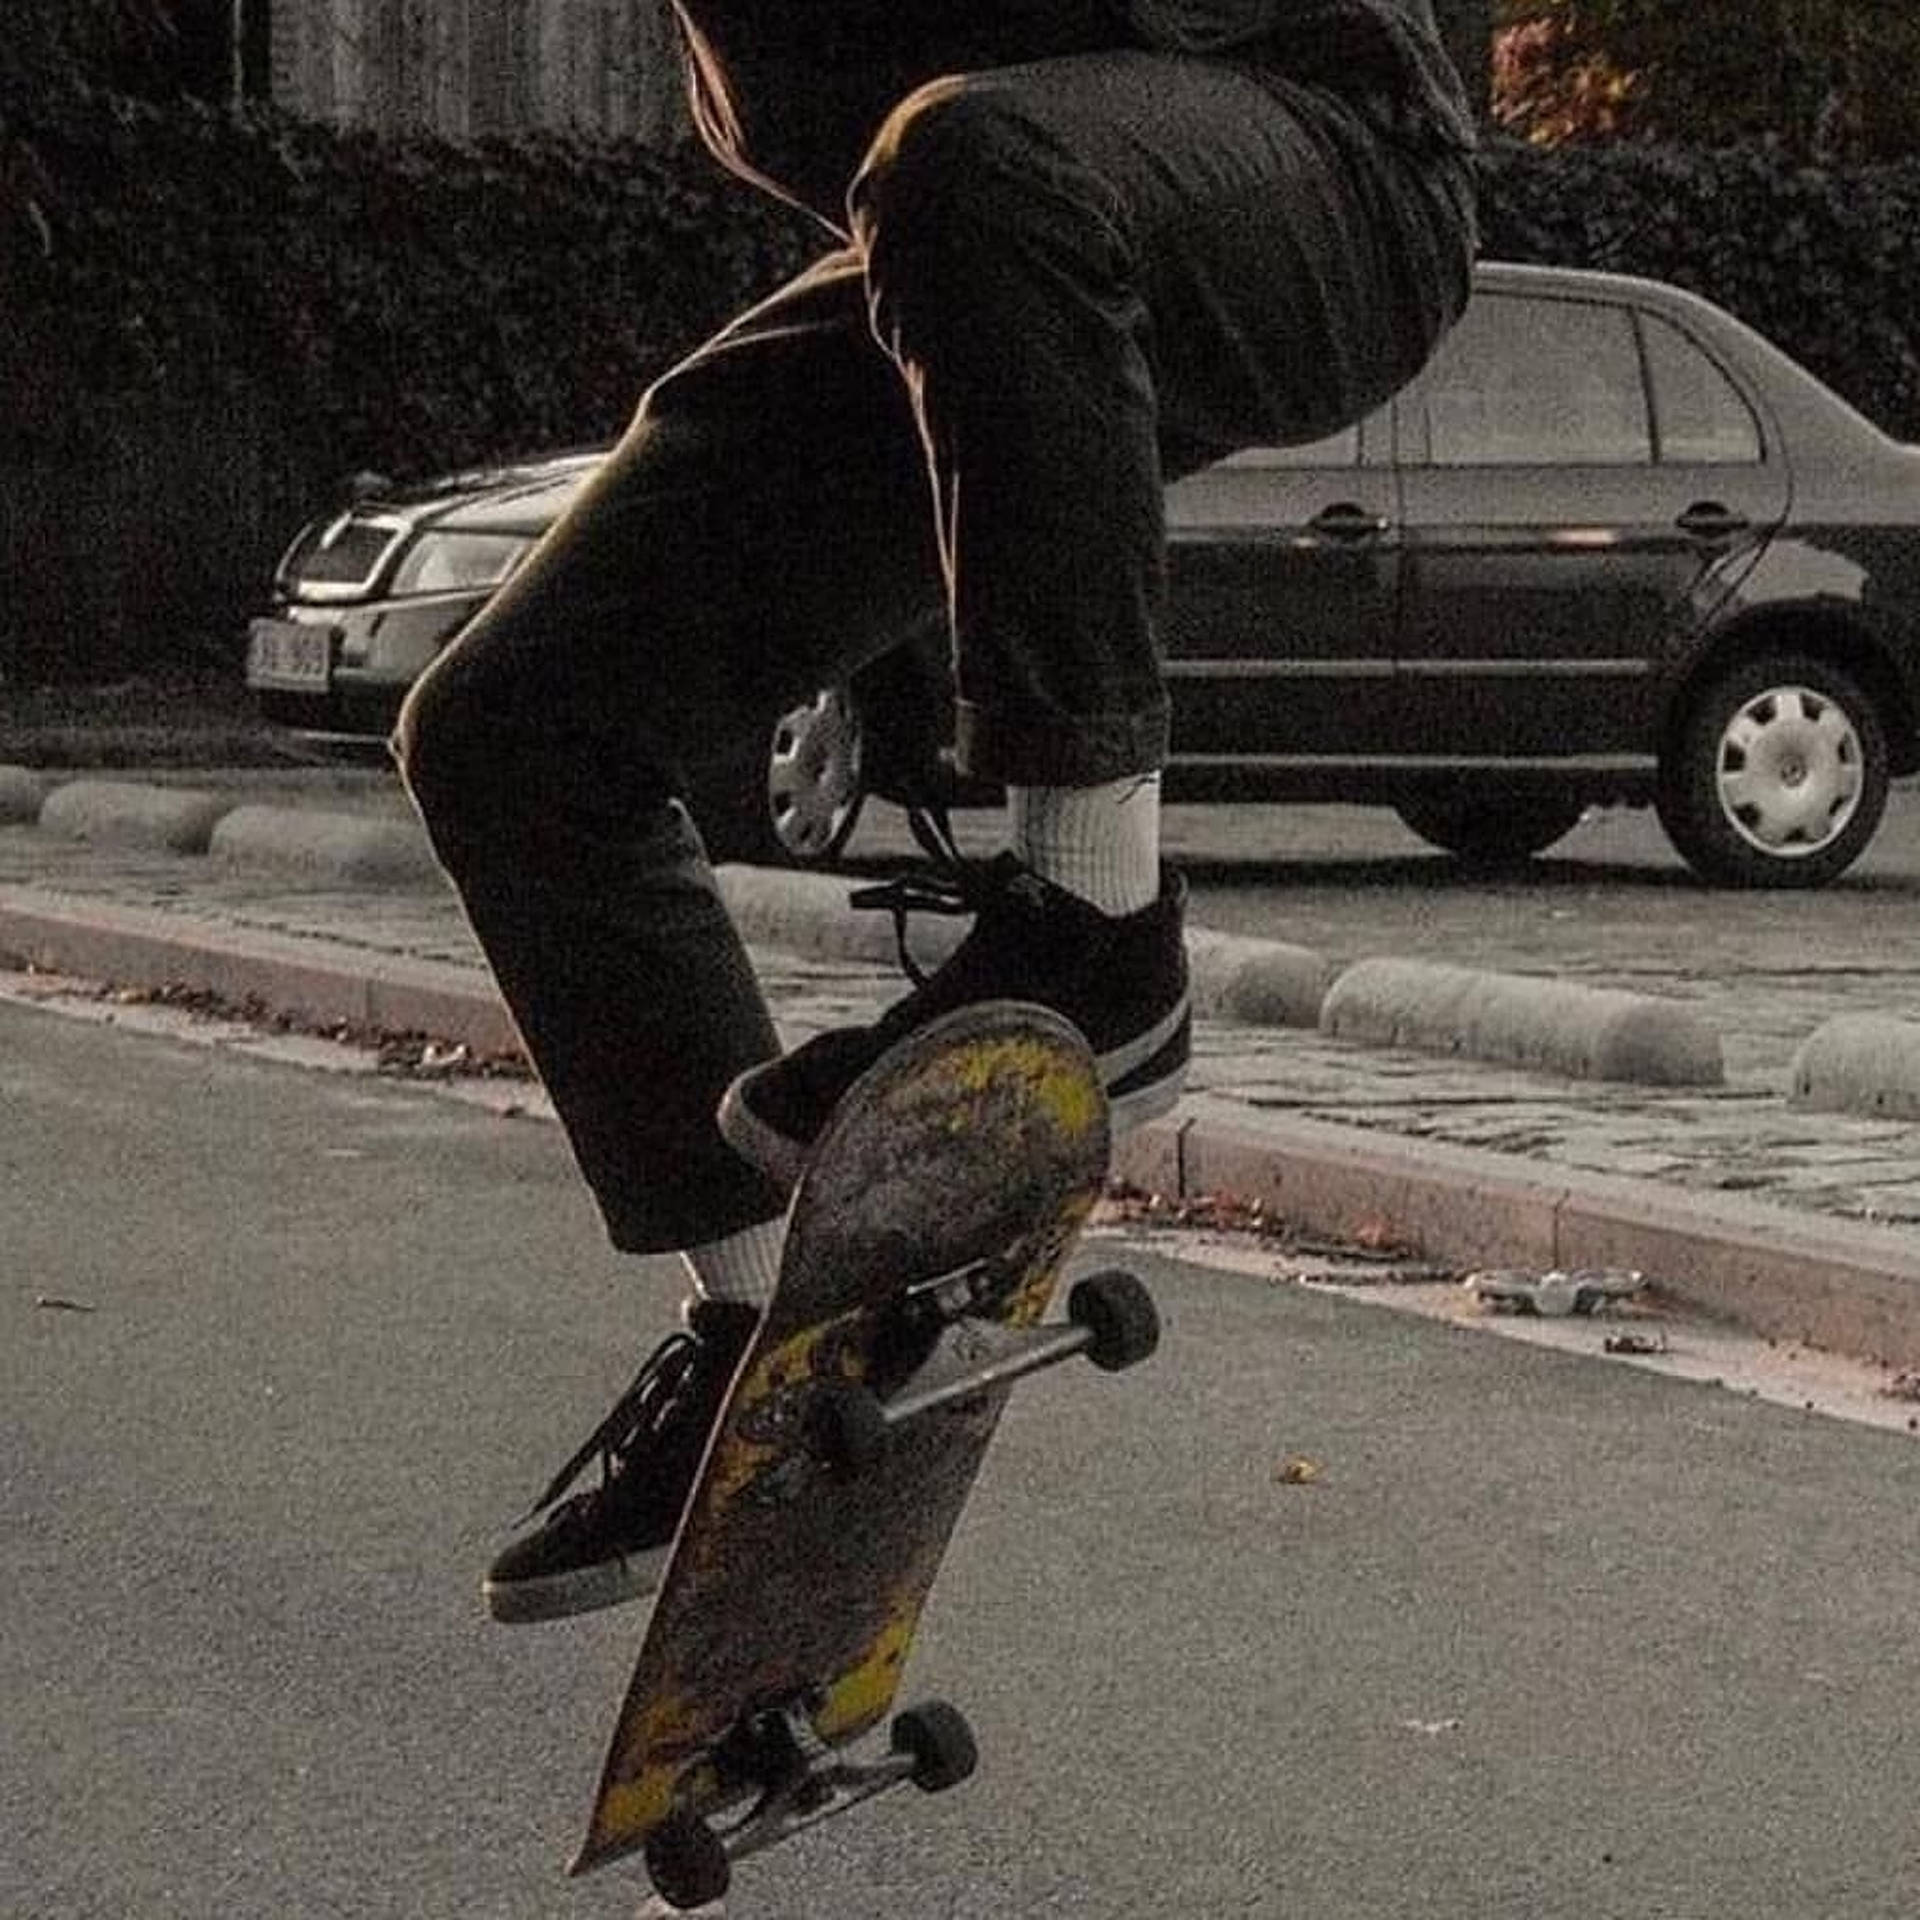 Skater Boy In Action Aesthetic Wallpaper